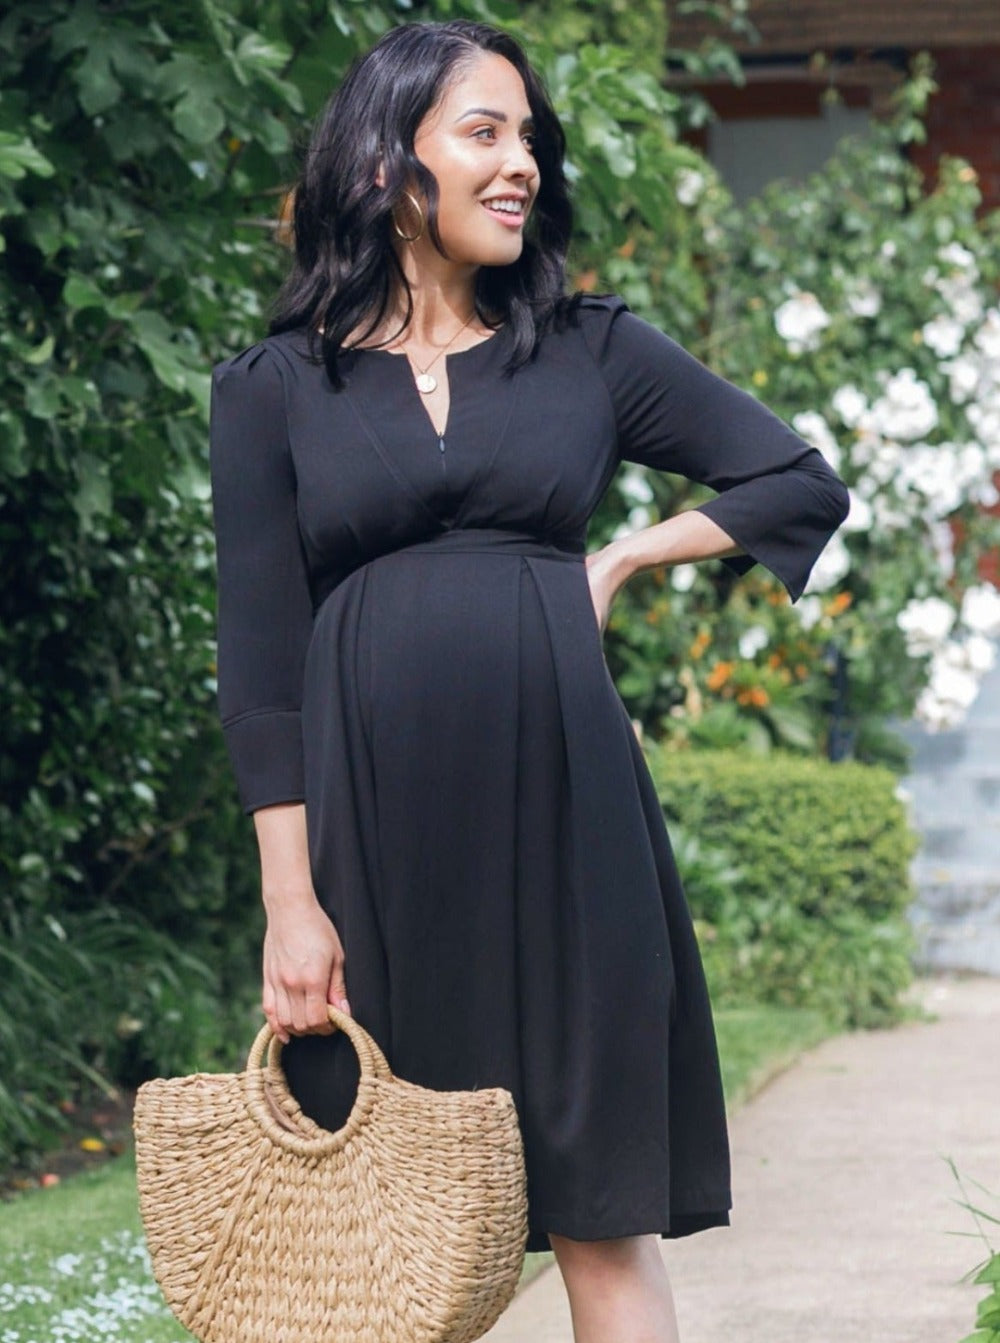 ¾ Sleeve Black Maternity Jumpsuit